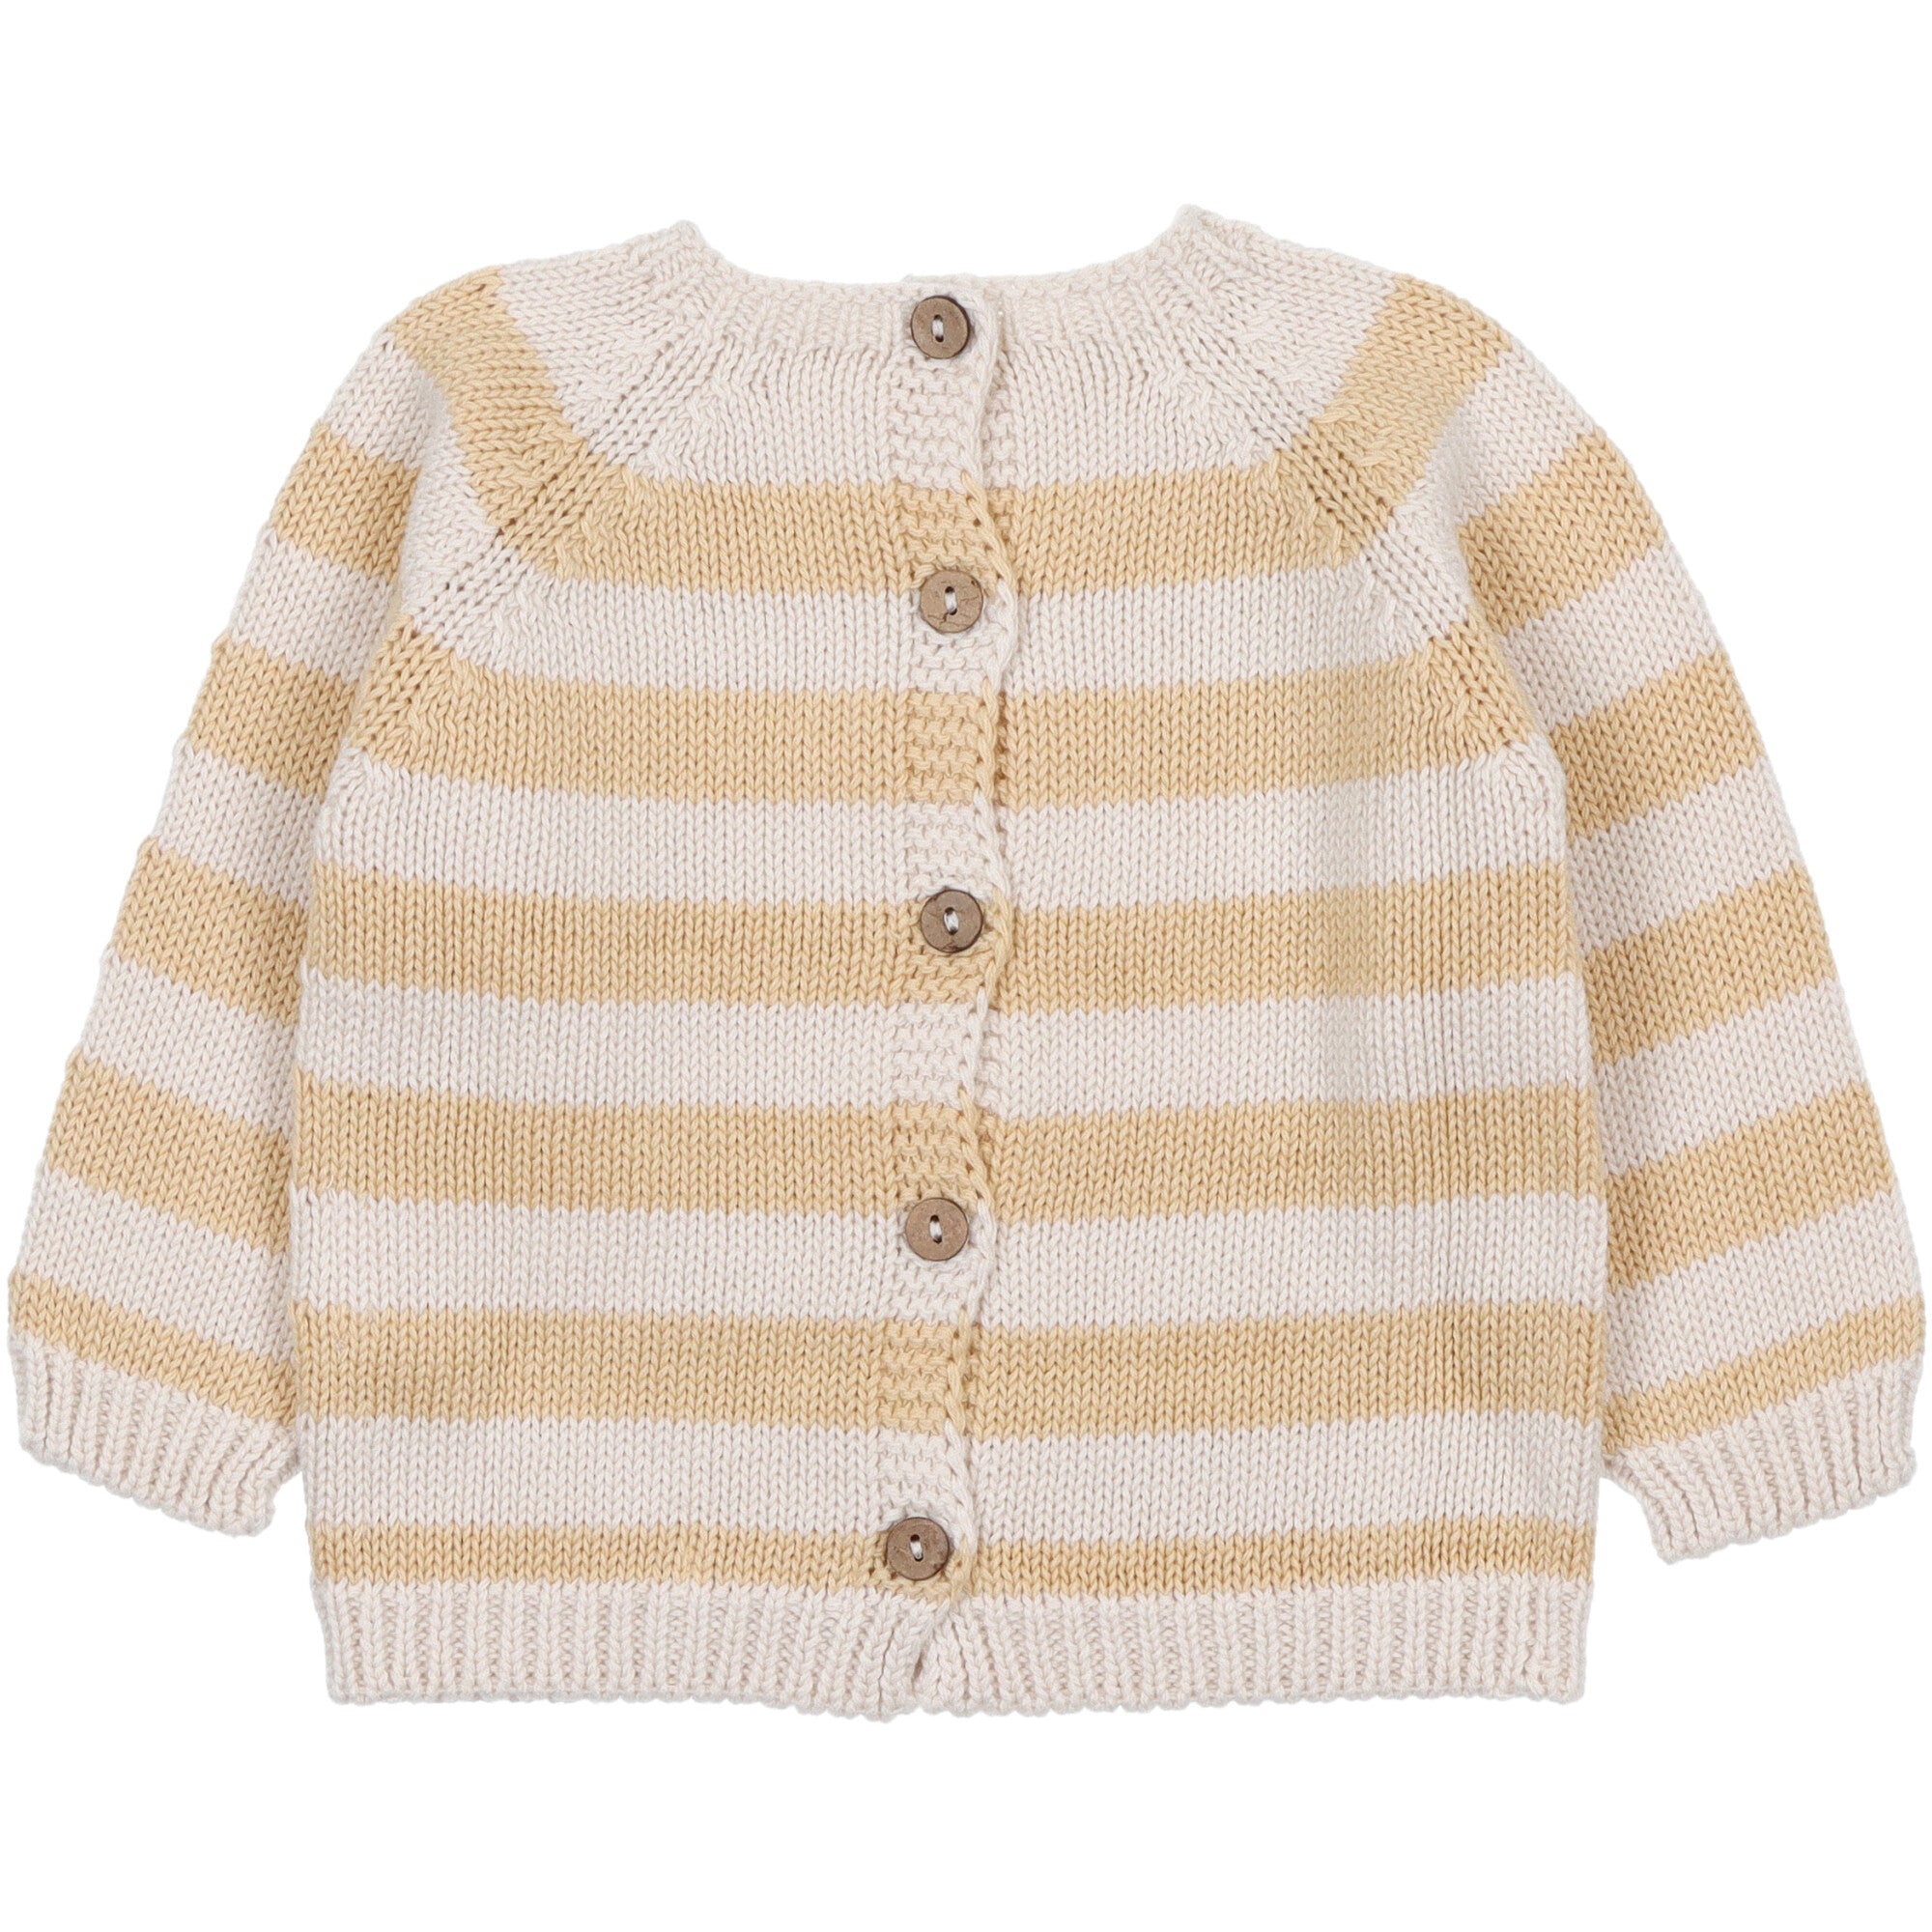 maglione-per-bambini-in-cotone-reversibile